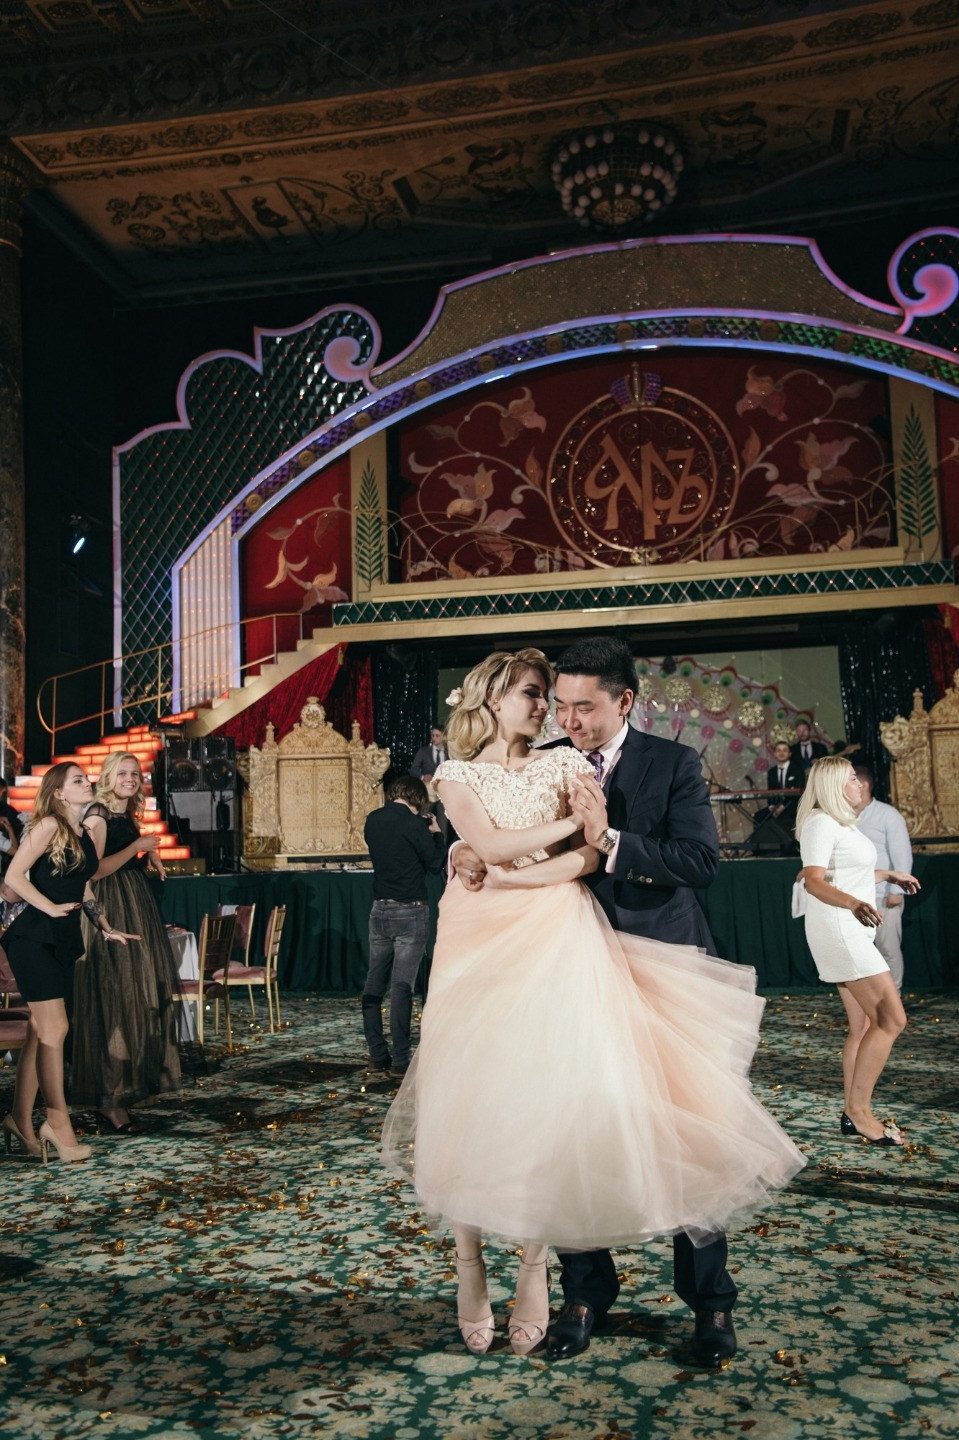 ФОТО ИЗ СТАТЬИ: Голливудский шик: свадьба в стиле ар-деко